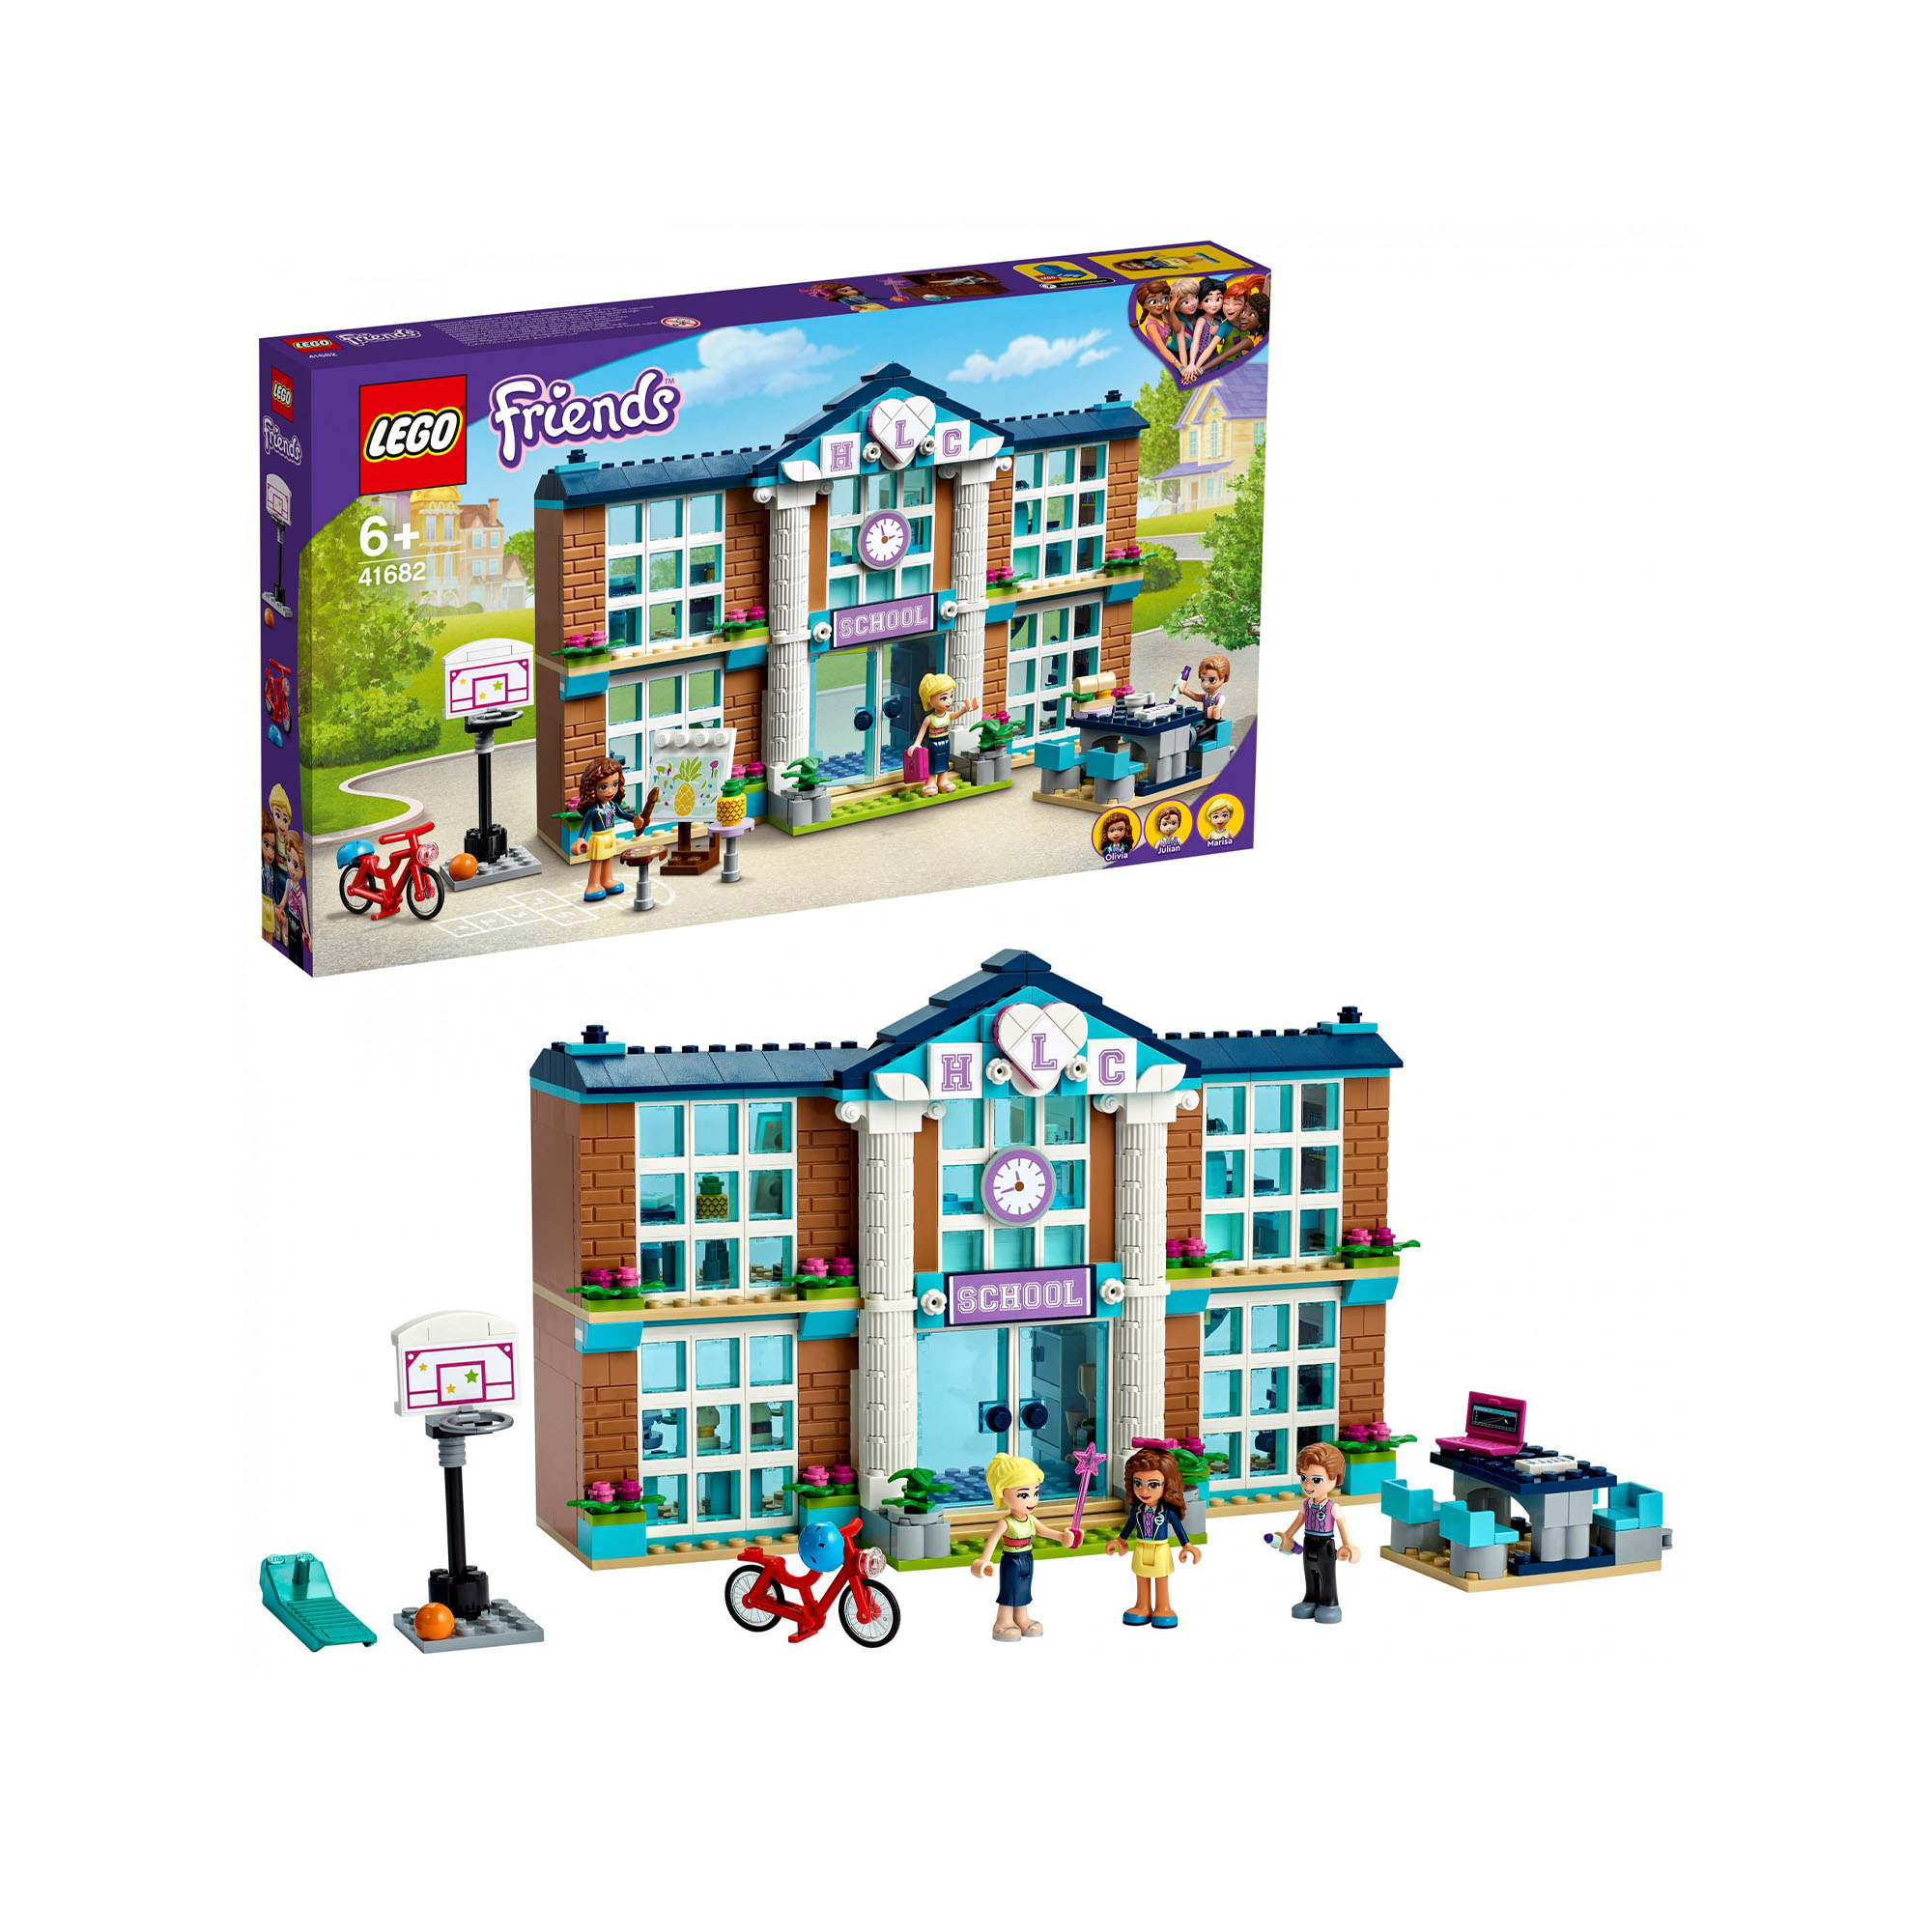 LEGO Friends Scuola di Heartlake City, Set di Costruzioni per Bambini 6 Anni con 41682, , large